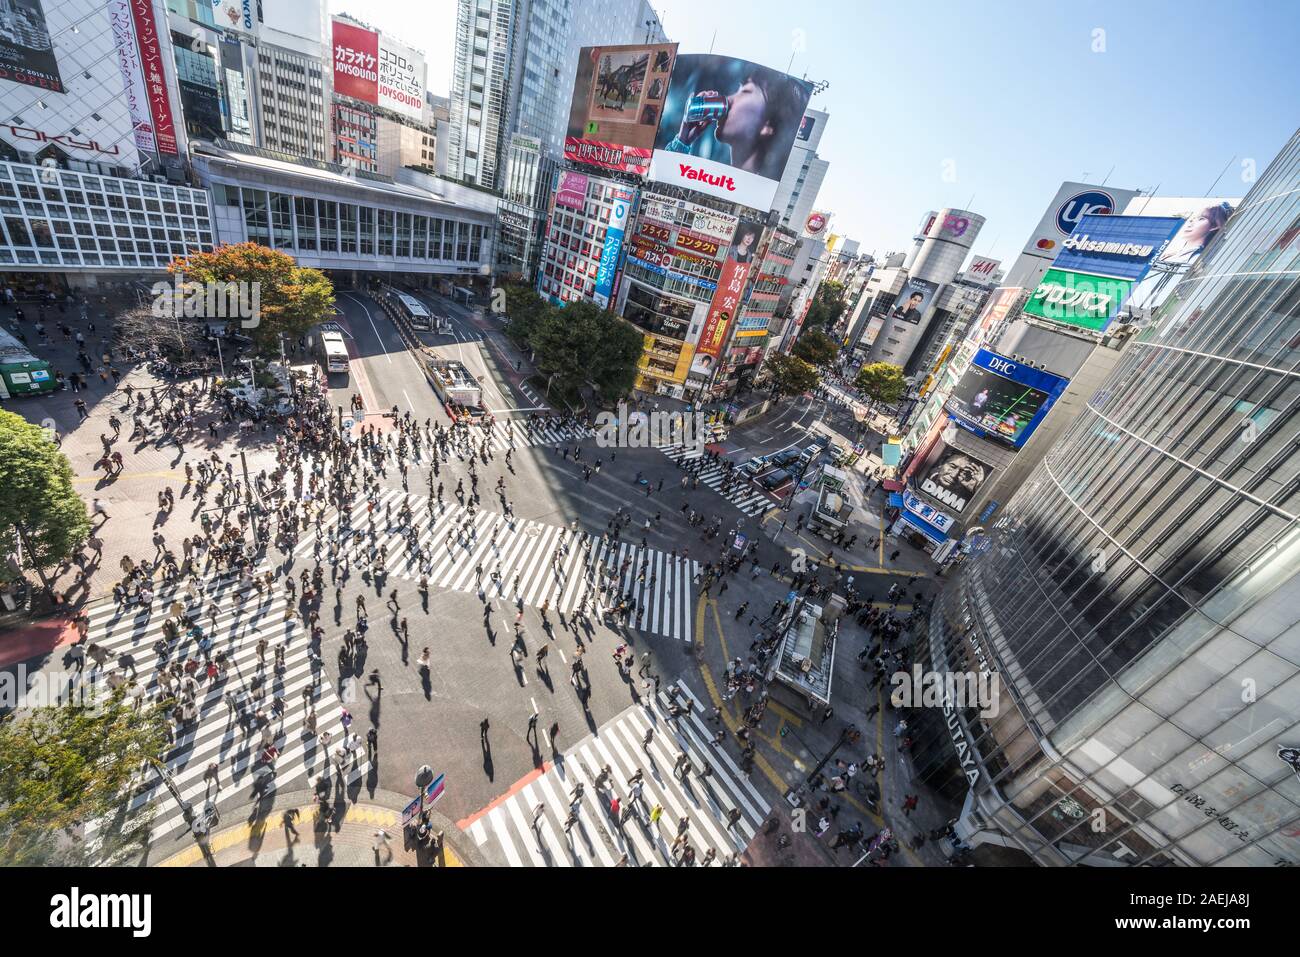 Tokyo, Giappone - 5 Nov 2019: affollate di persone a piedi, in auto il traffico su Shibuya scramble crossing, ad alto angolo di visione. Tokyo attrazione turistica, Japan Tourism Foto Stock